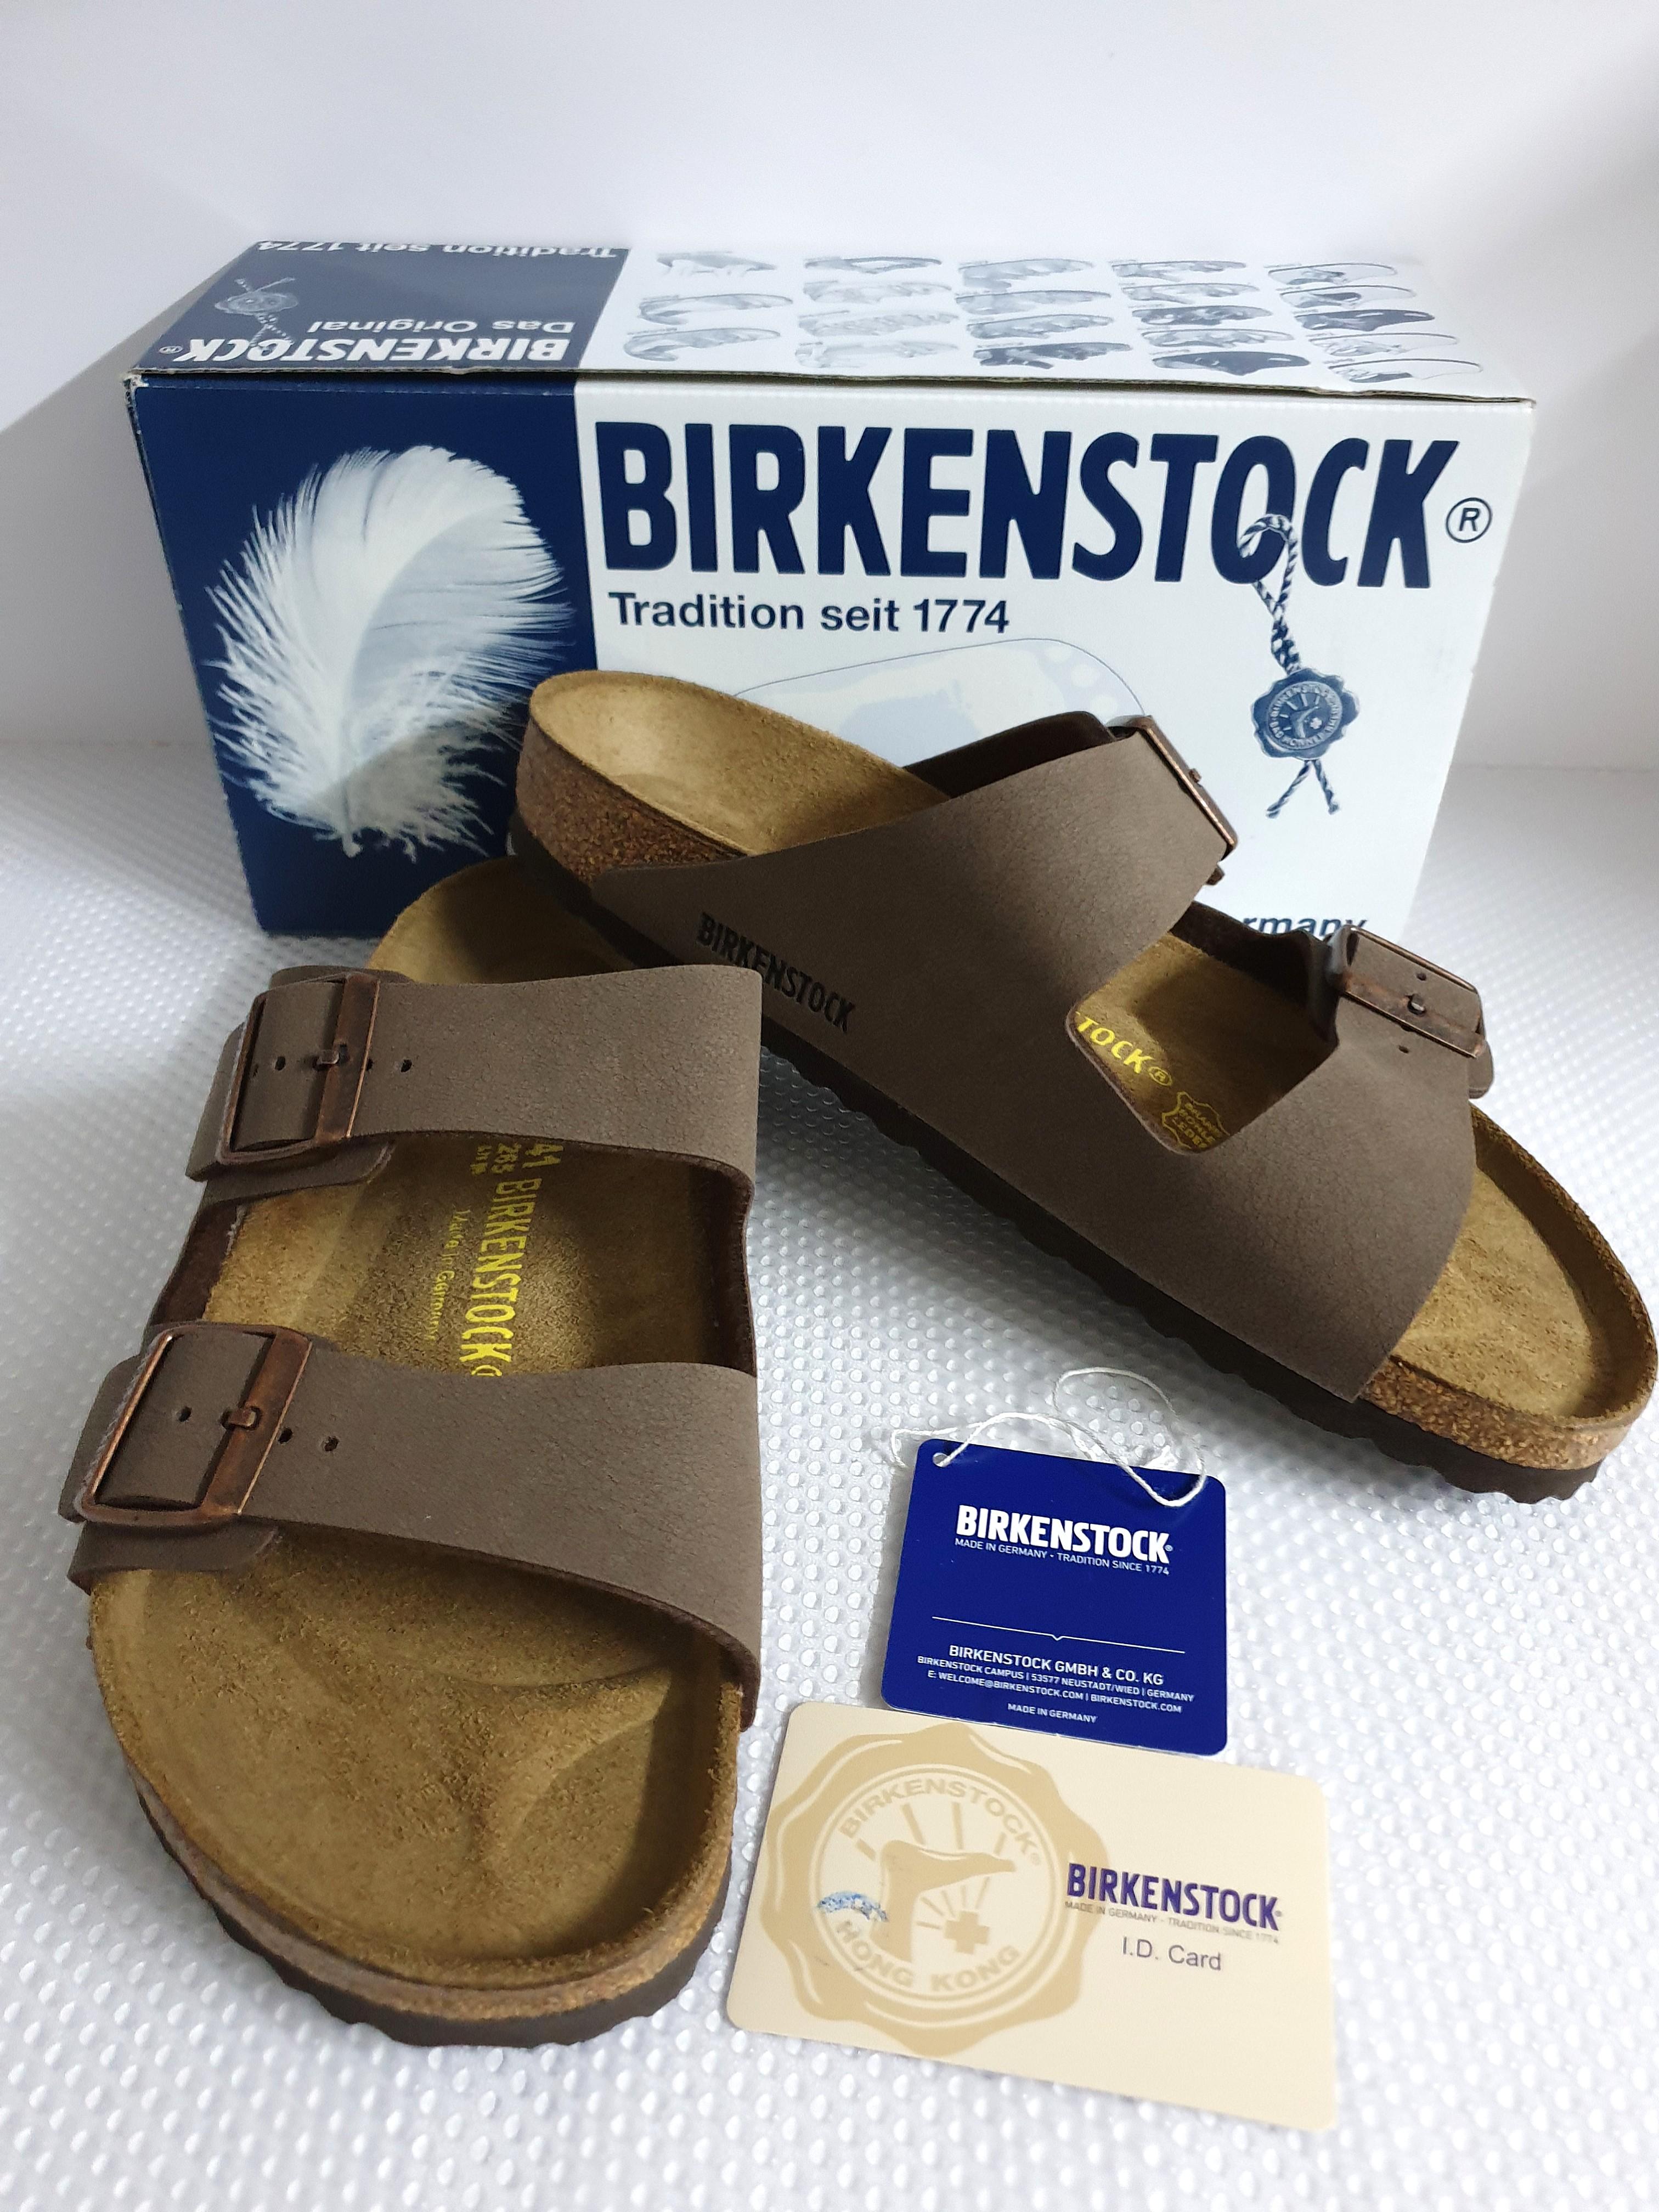 price of birkenstocks in germany